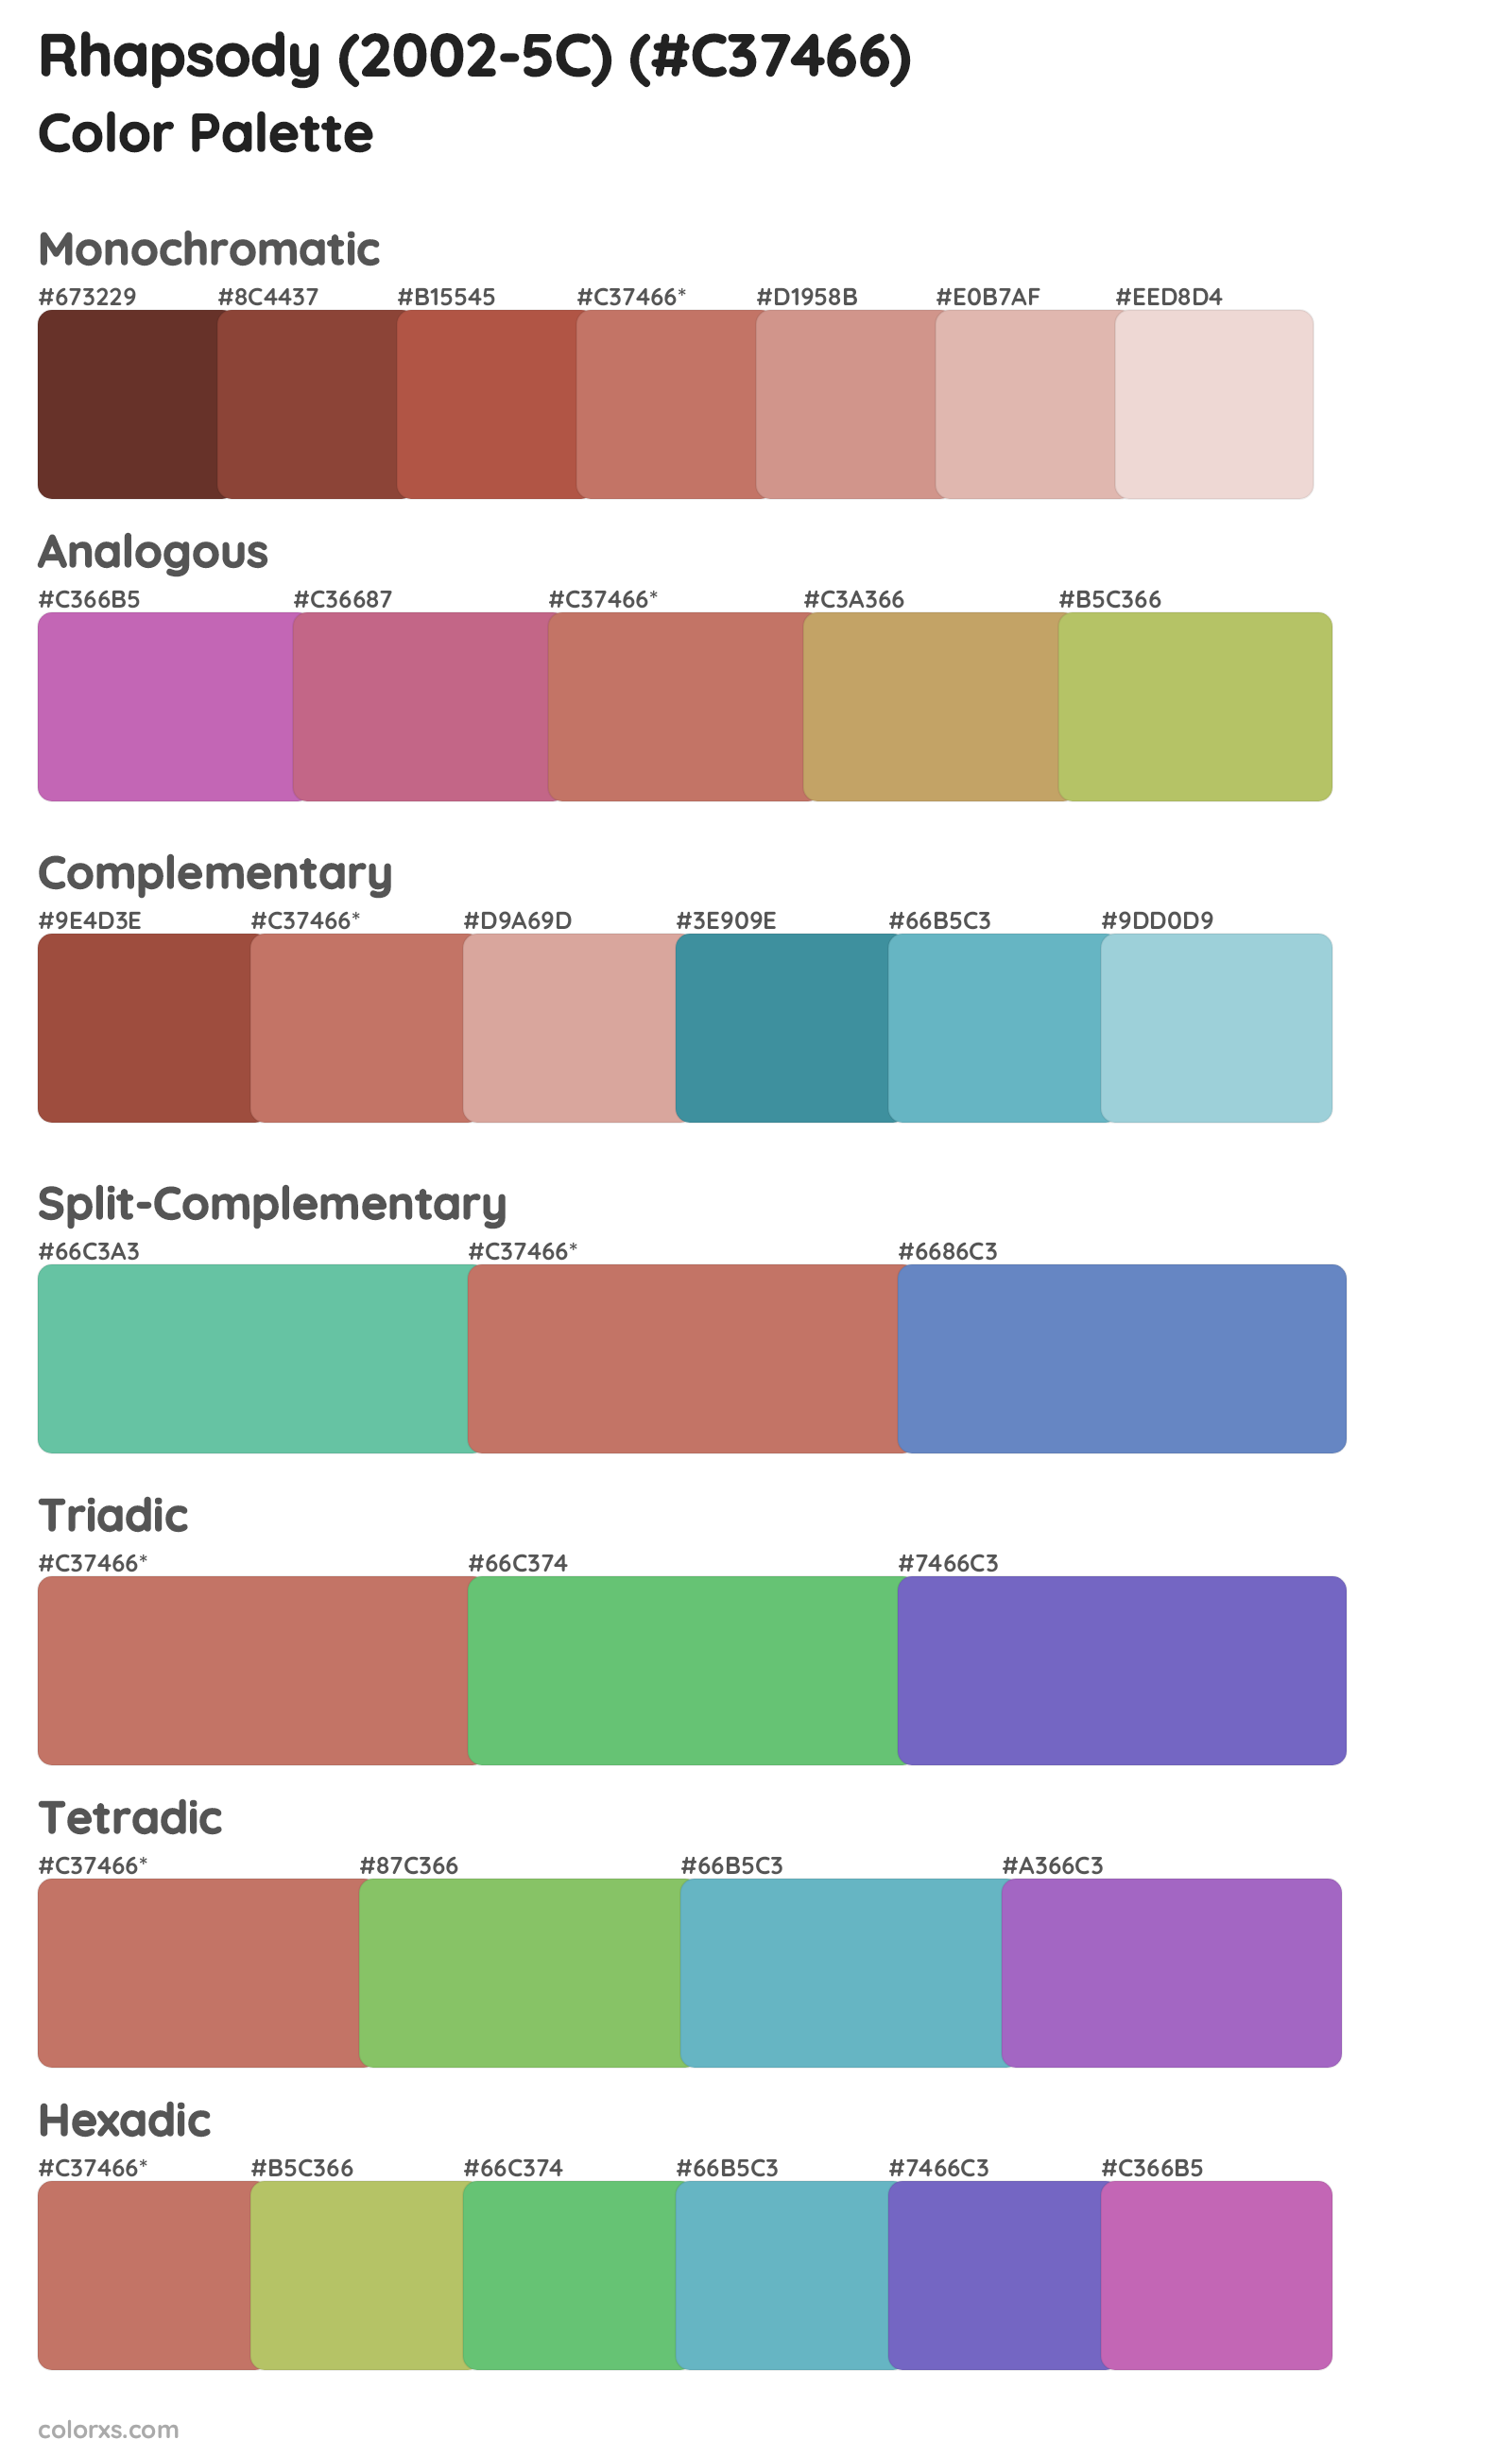 Rhapsody (2002-5C) Color Scheme Palettes